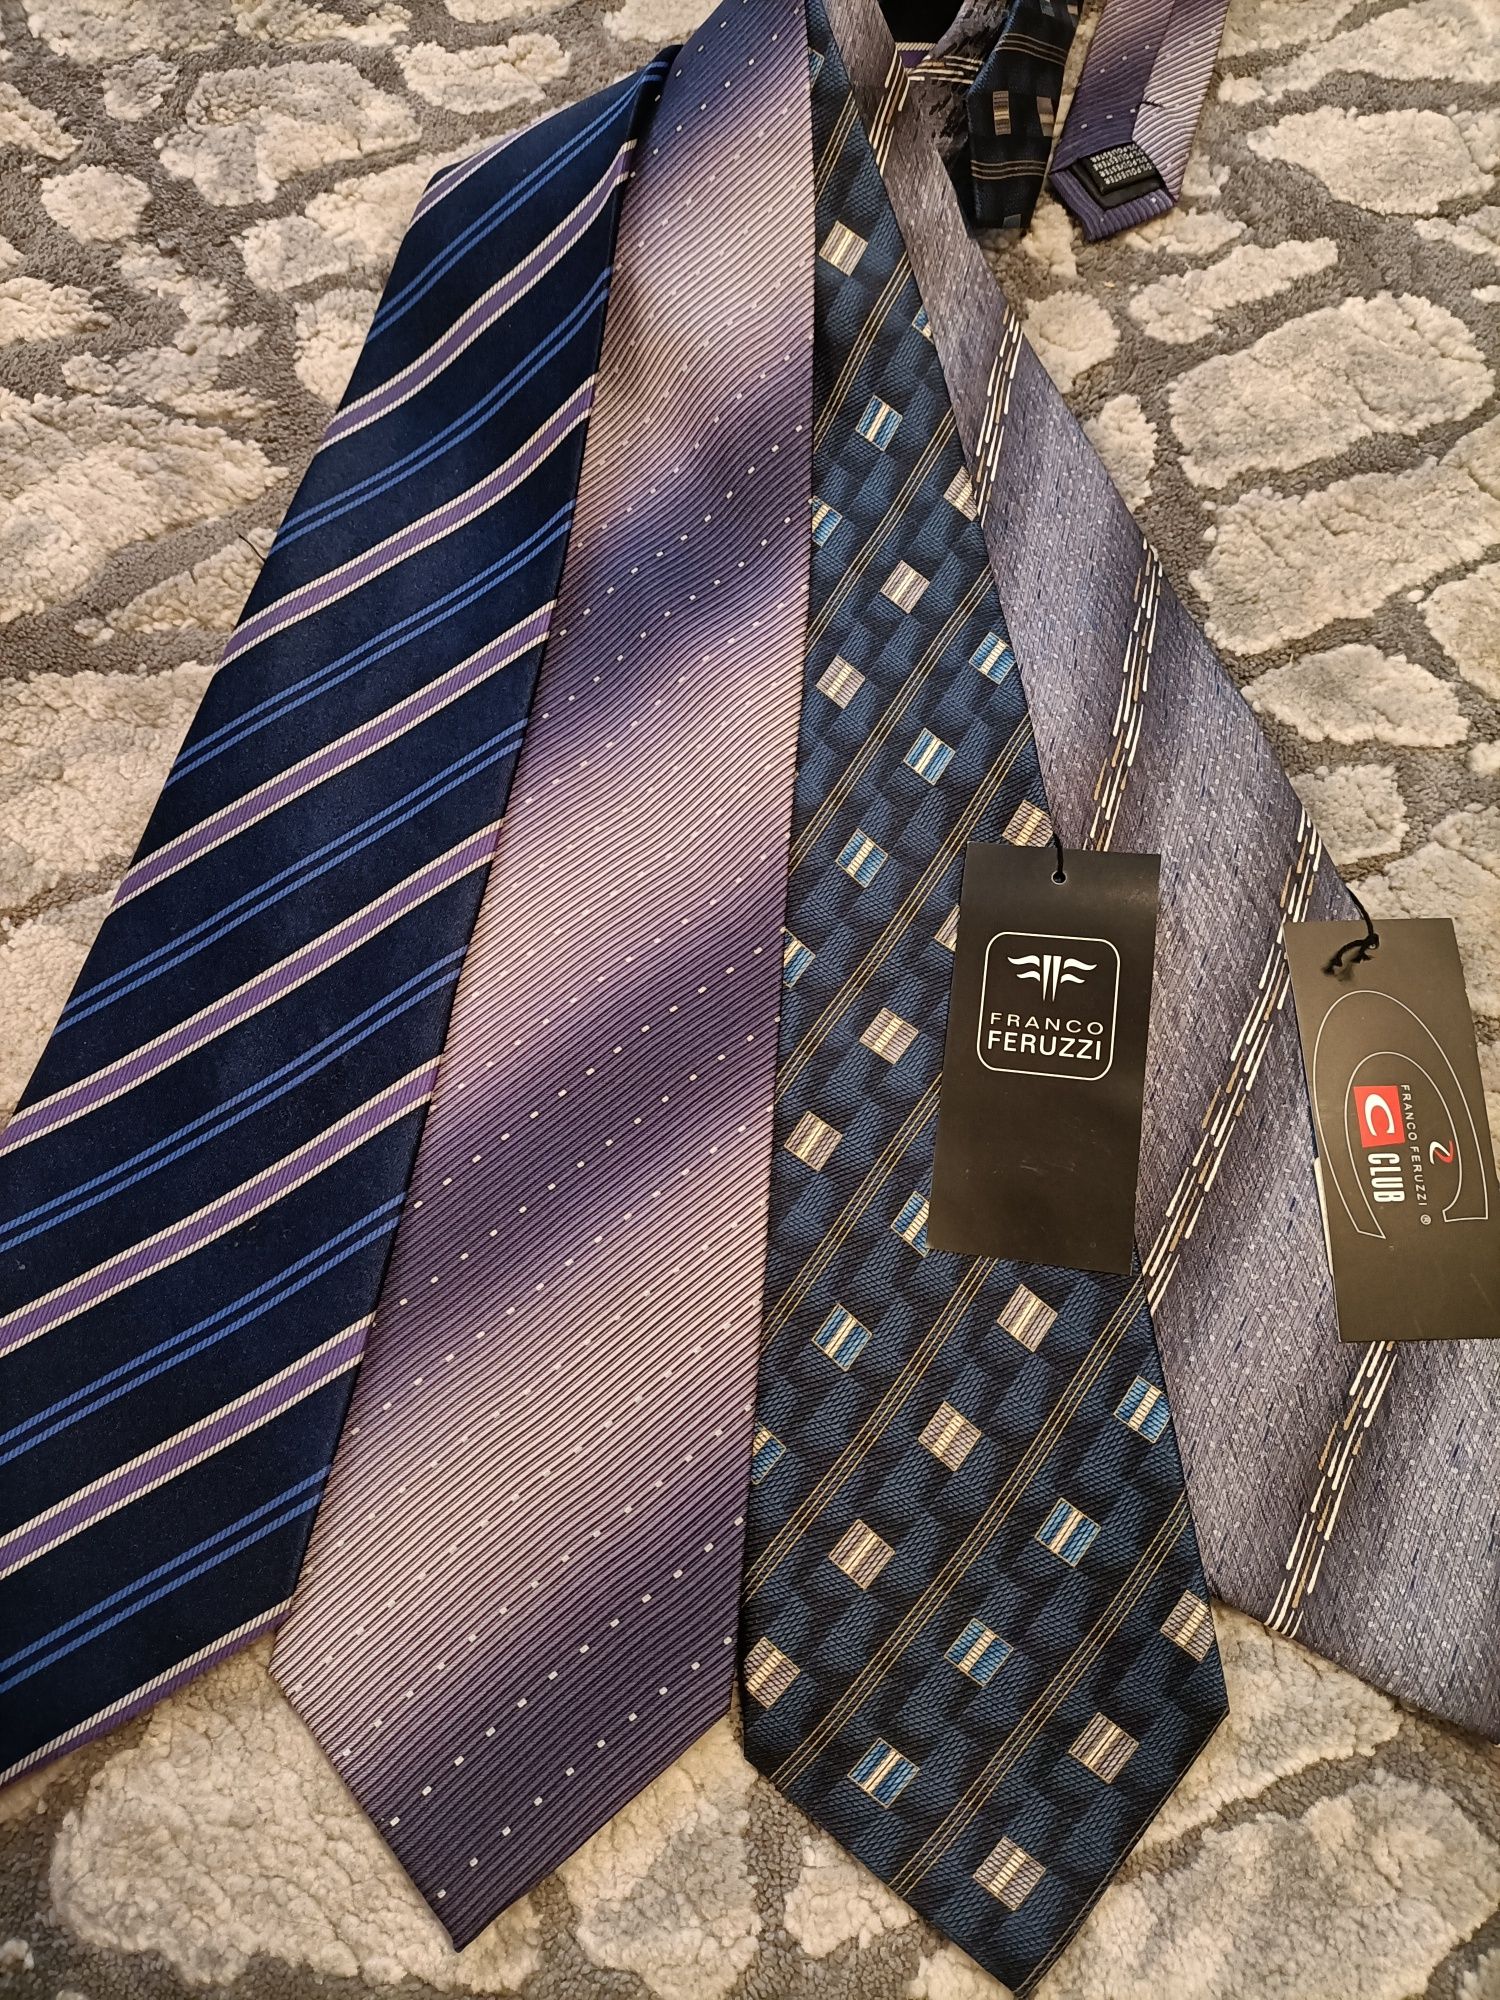 4 krawaty za 15zł